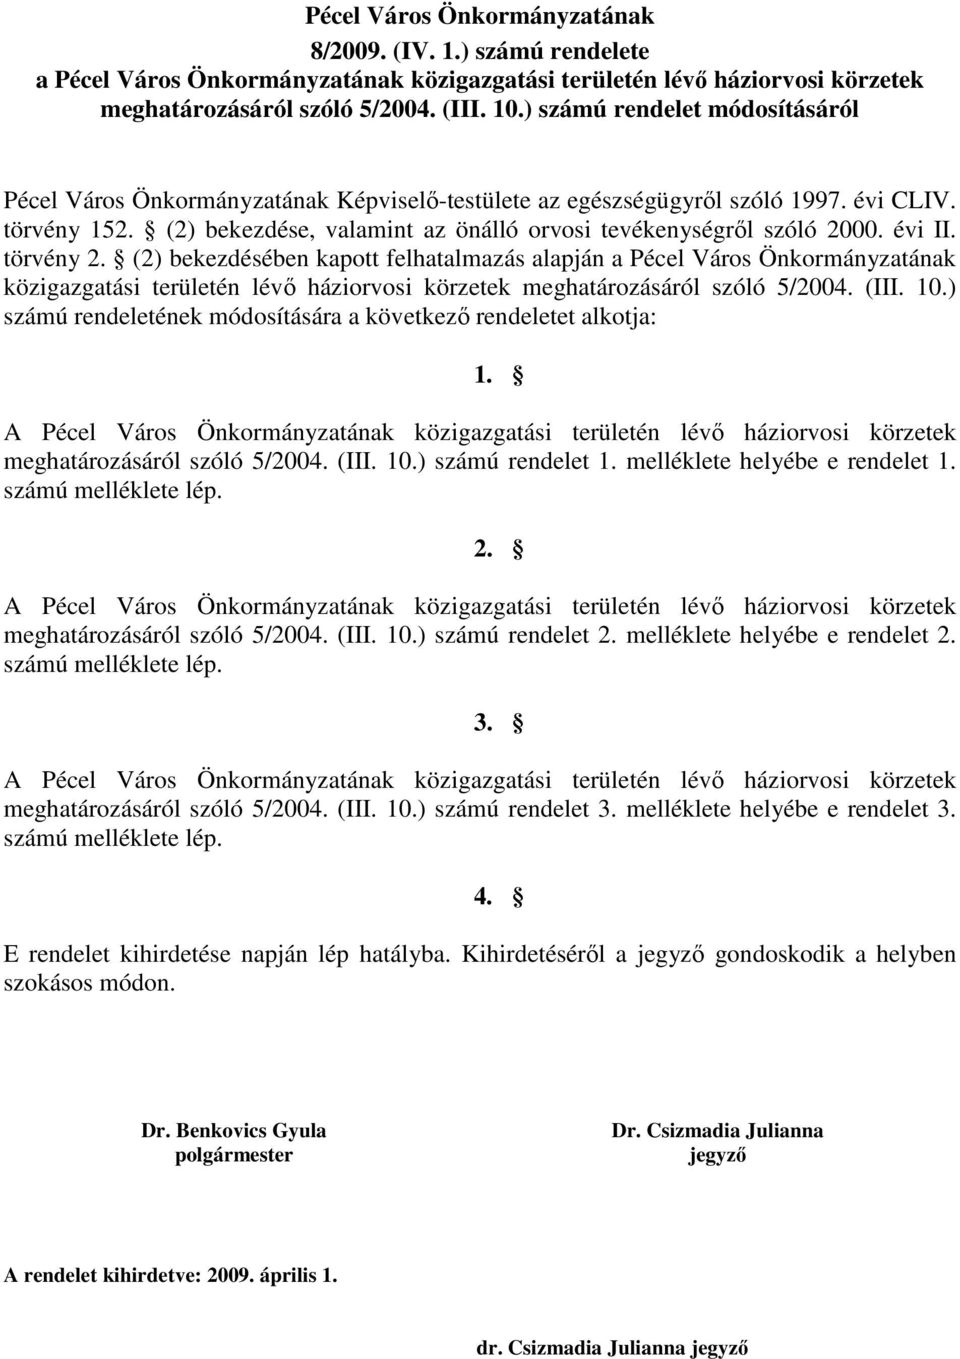 évi II. törvény 2. (2) bekezdésében kapott felhatalmazás alapján a Pécel Város Önkormányzatának közigazgatási területén lévı háziorvosi ek meghatározásáról szóló 5/2004. (III. 10.